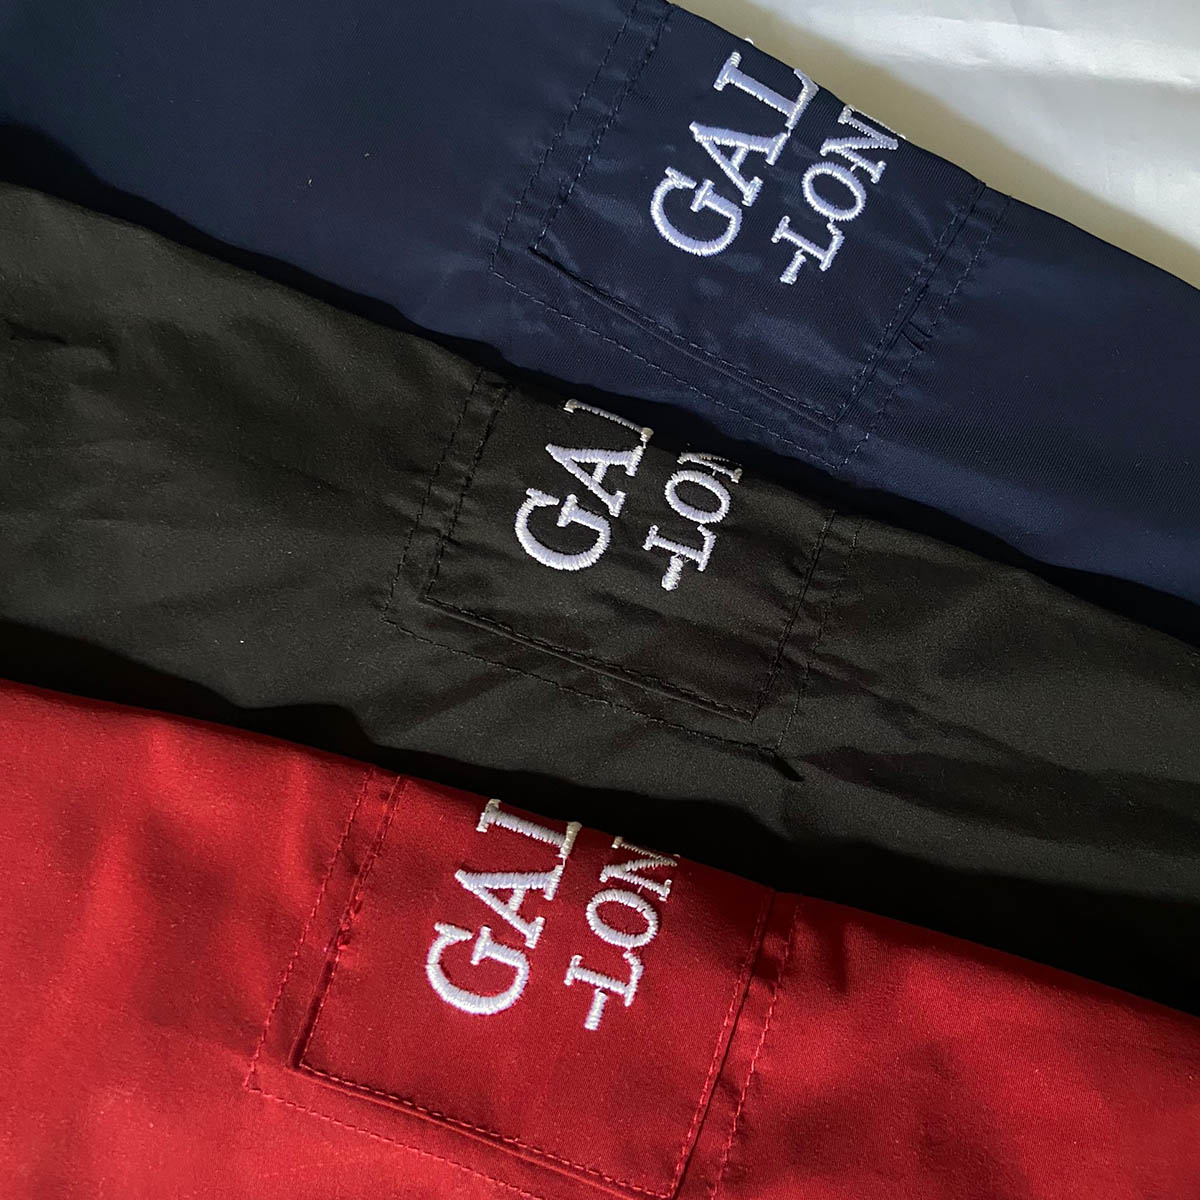 Áo khoác nam 2 lớp cao cấp Galvin London chất liệu vải xi nhật chất lượng dày dặn chống nắng, chống gió bụi tốt, kiểu dáng form chuẩn đẹp thời trang